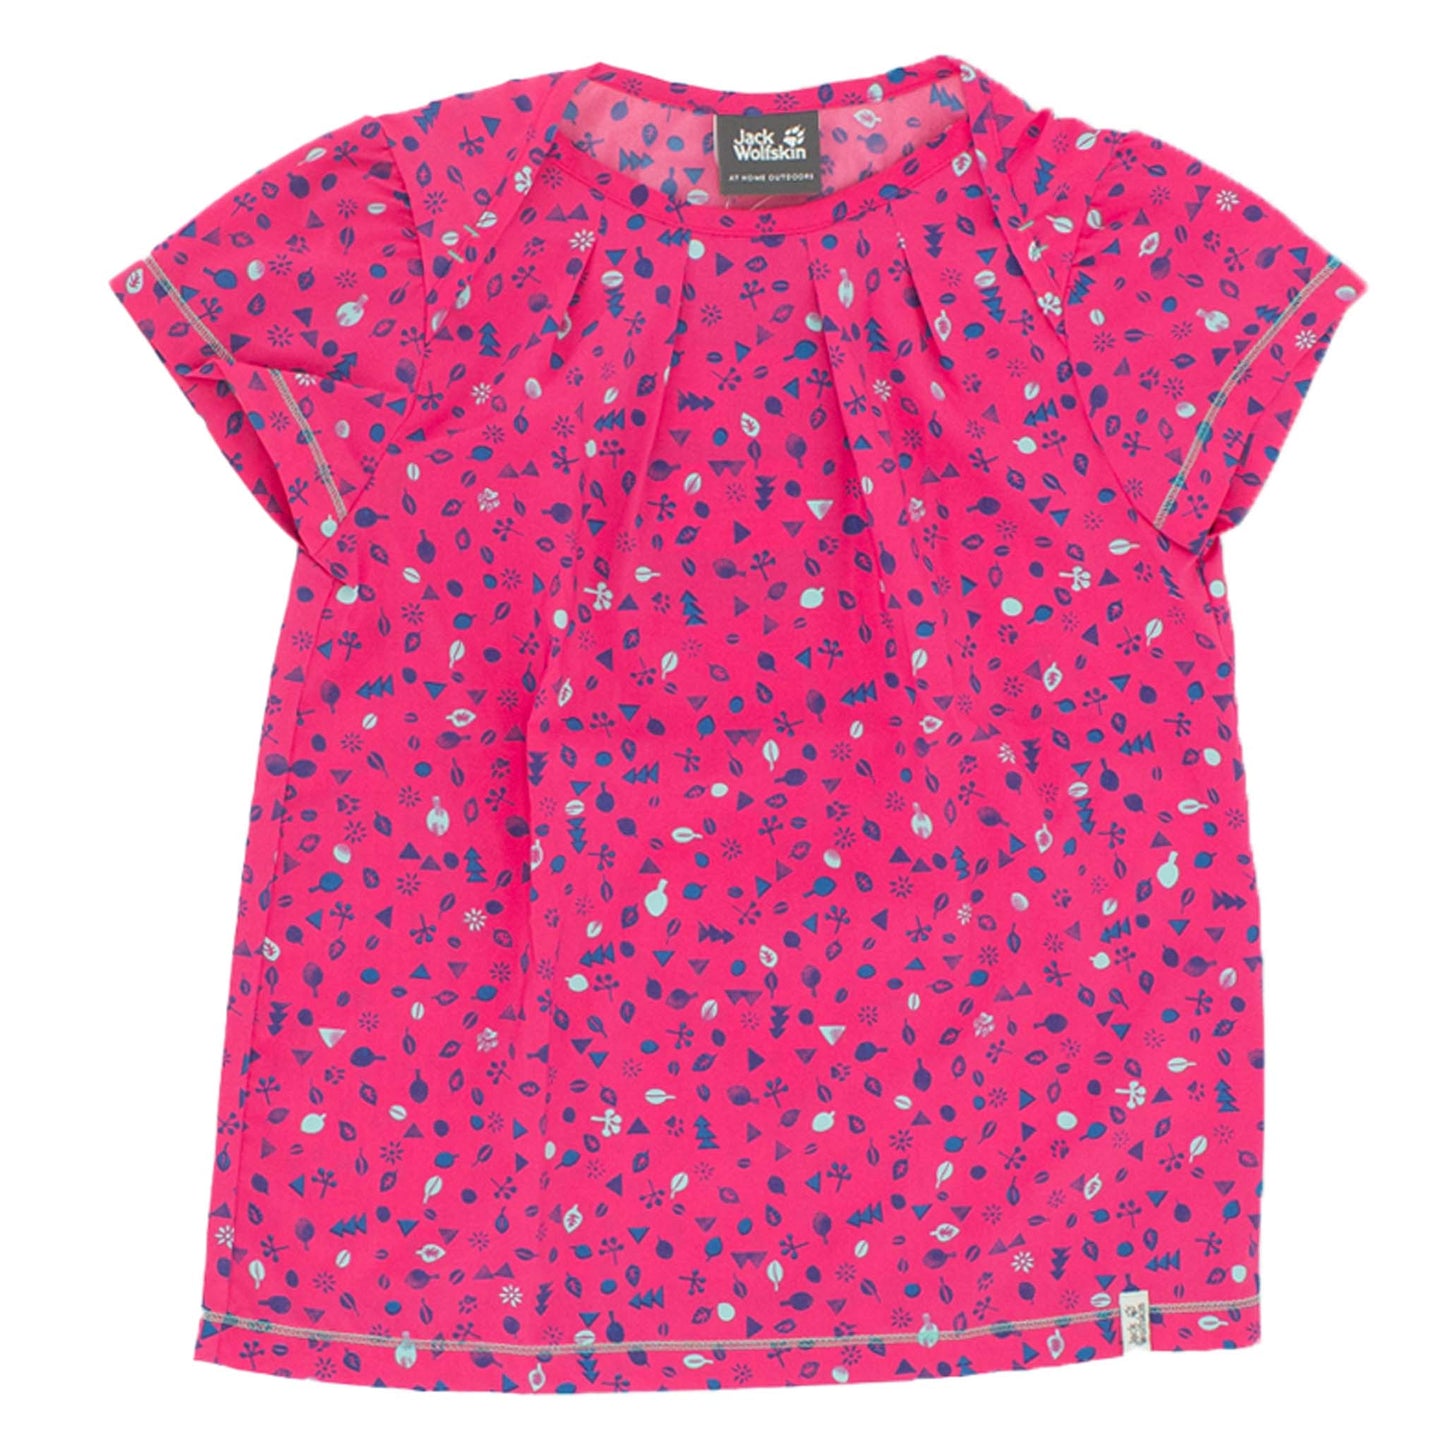 Jack Wolfskin Sunflower Shirt Girls Tee Kinder T-Shirt kurzarm Shirt 1605841-2045-1